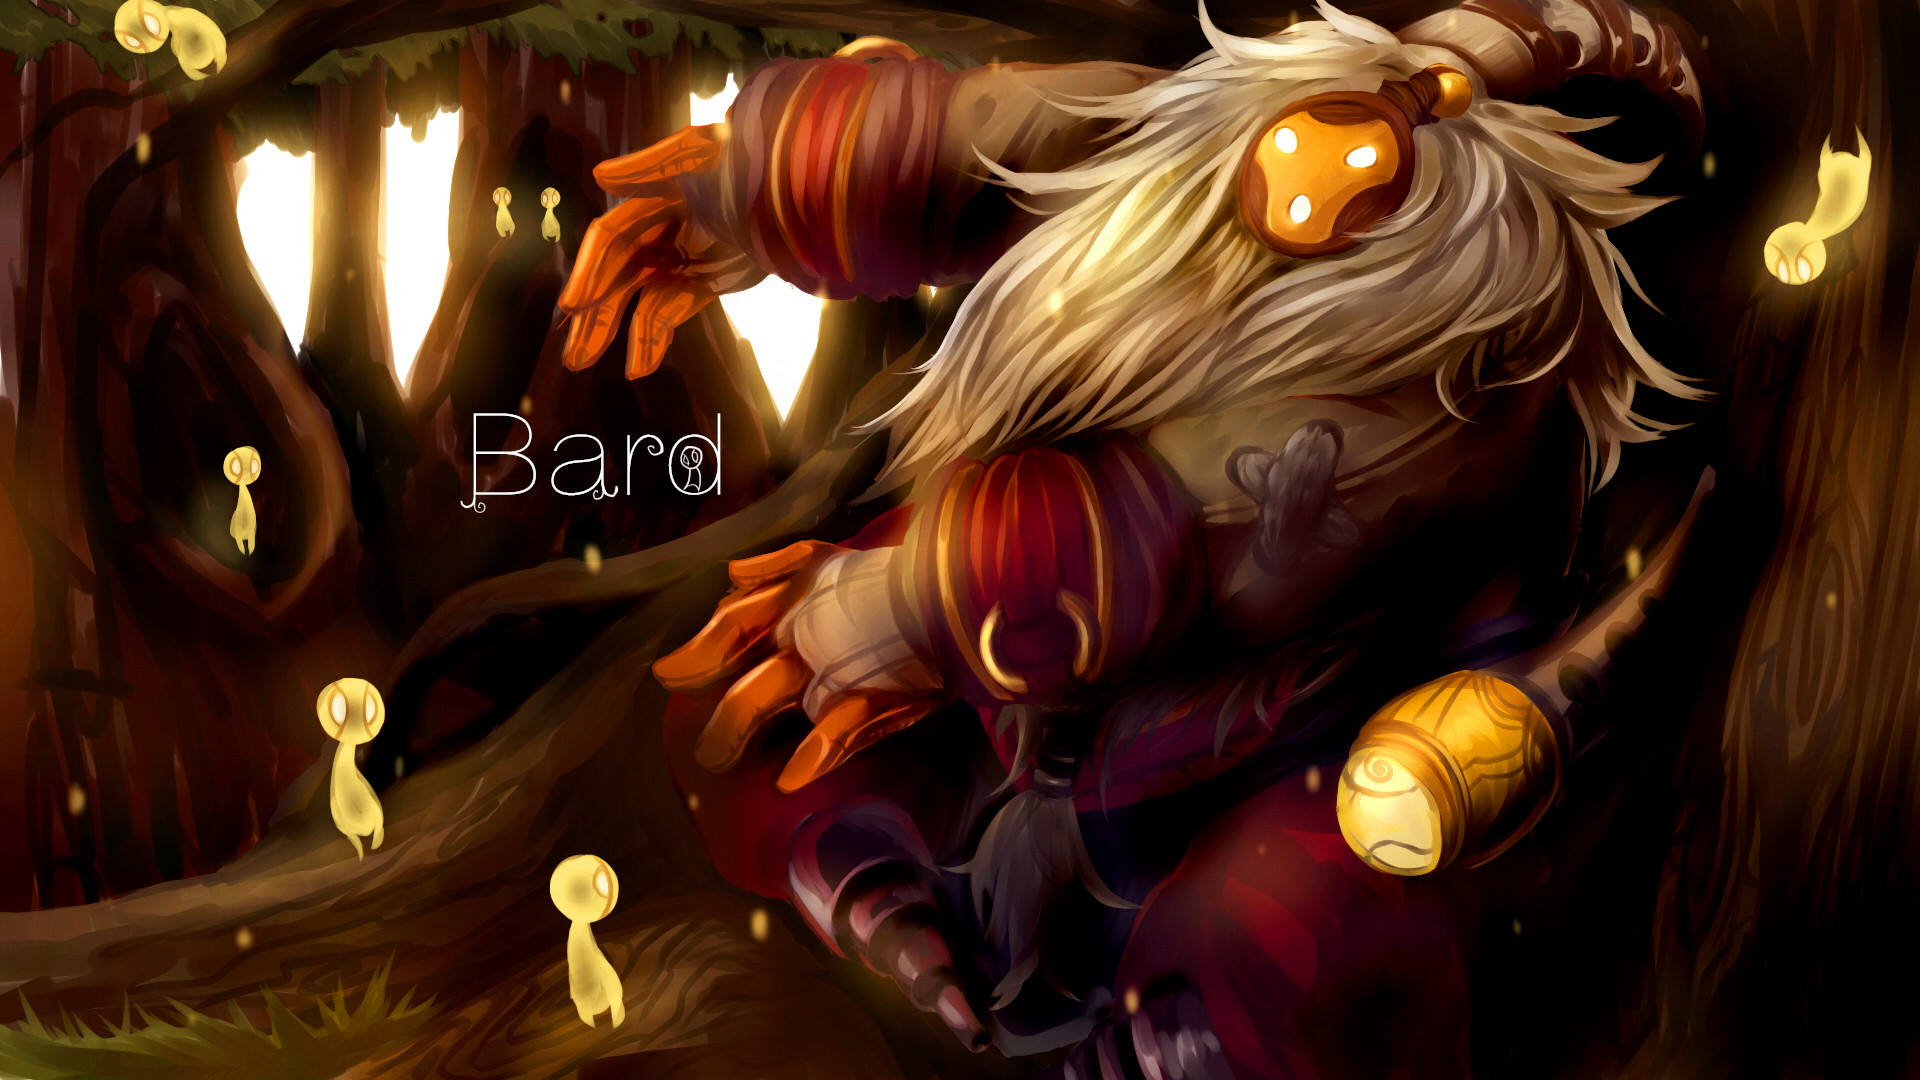 Bard Wallpaper - Lol Bard Fan Art - HD Wallpaper 